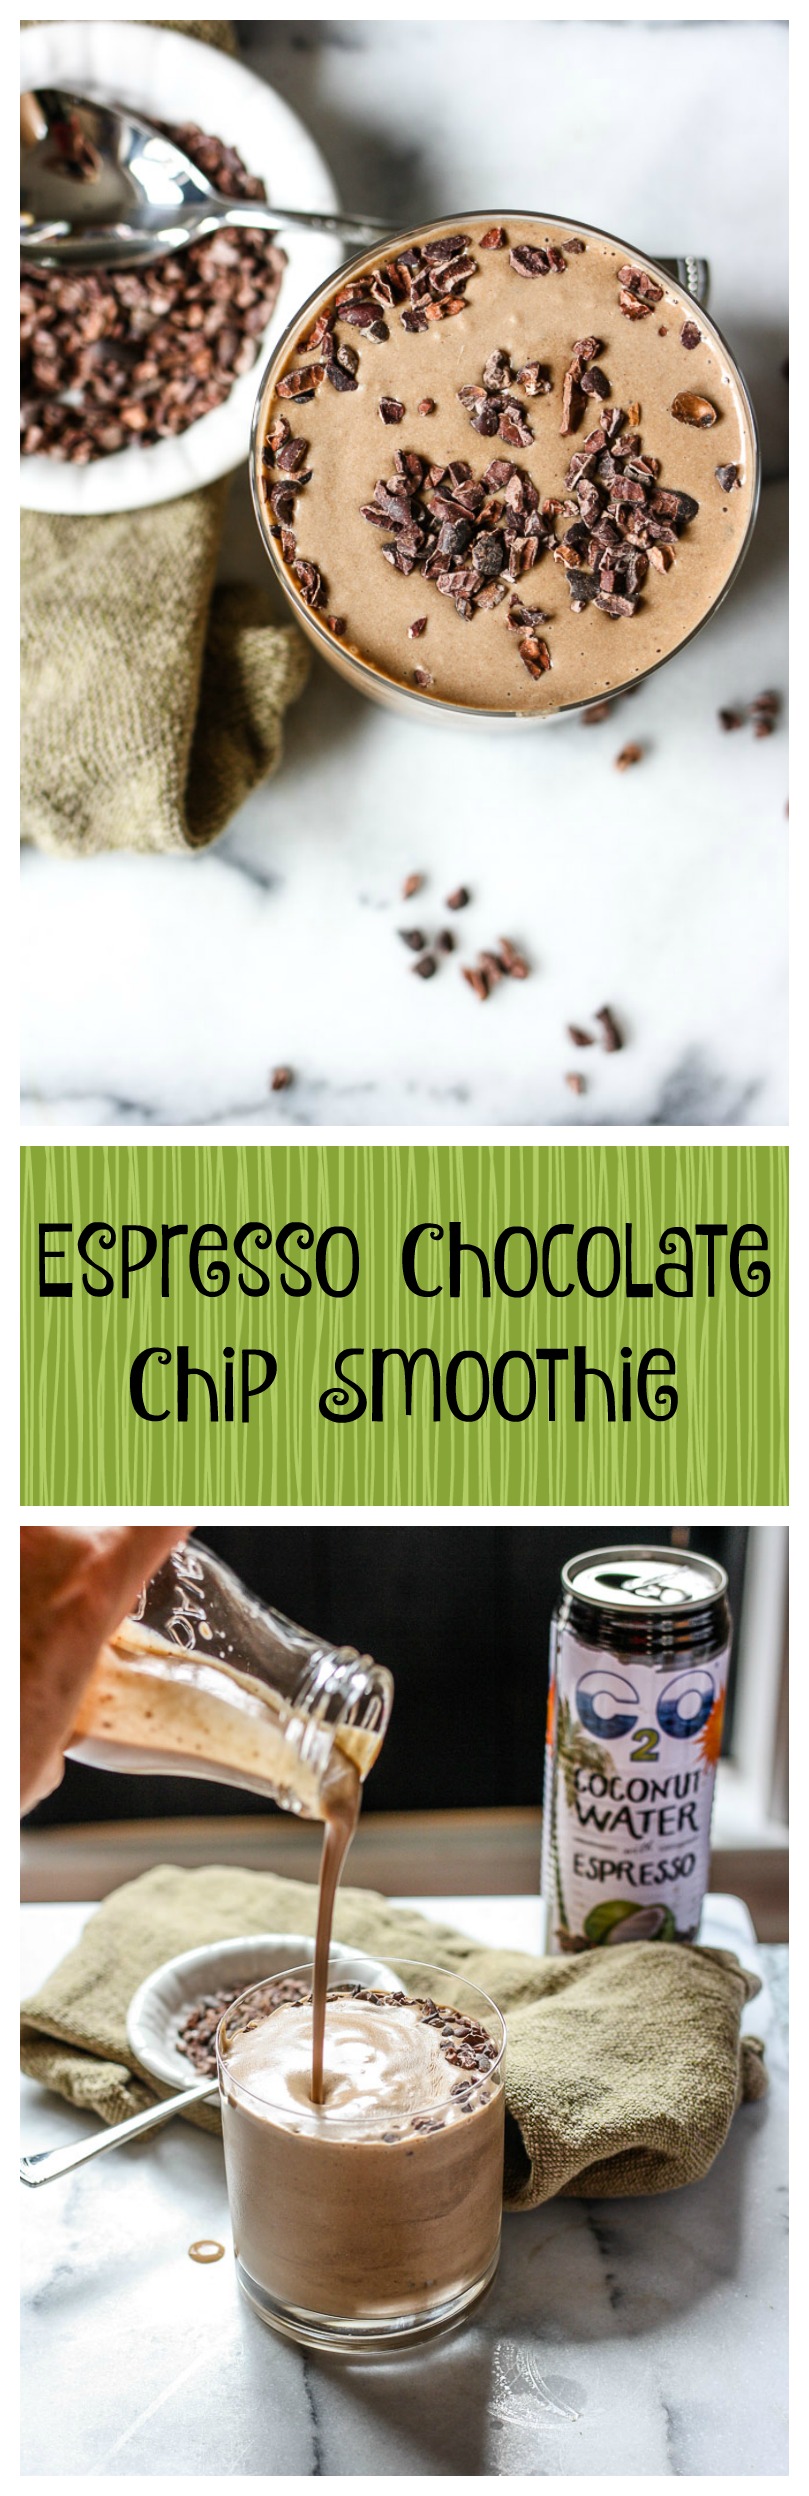 espresso chocolate chip smoothie